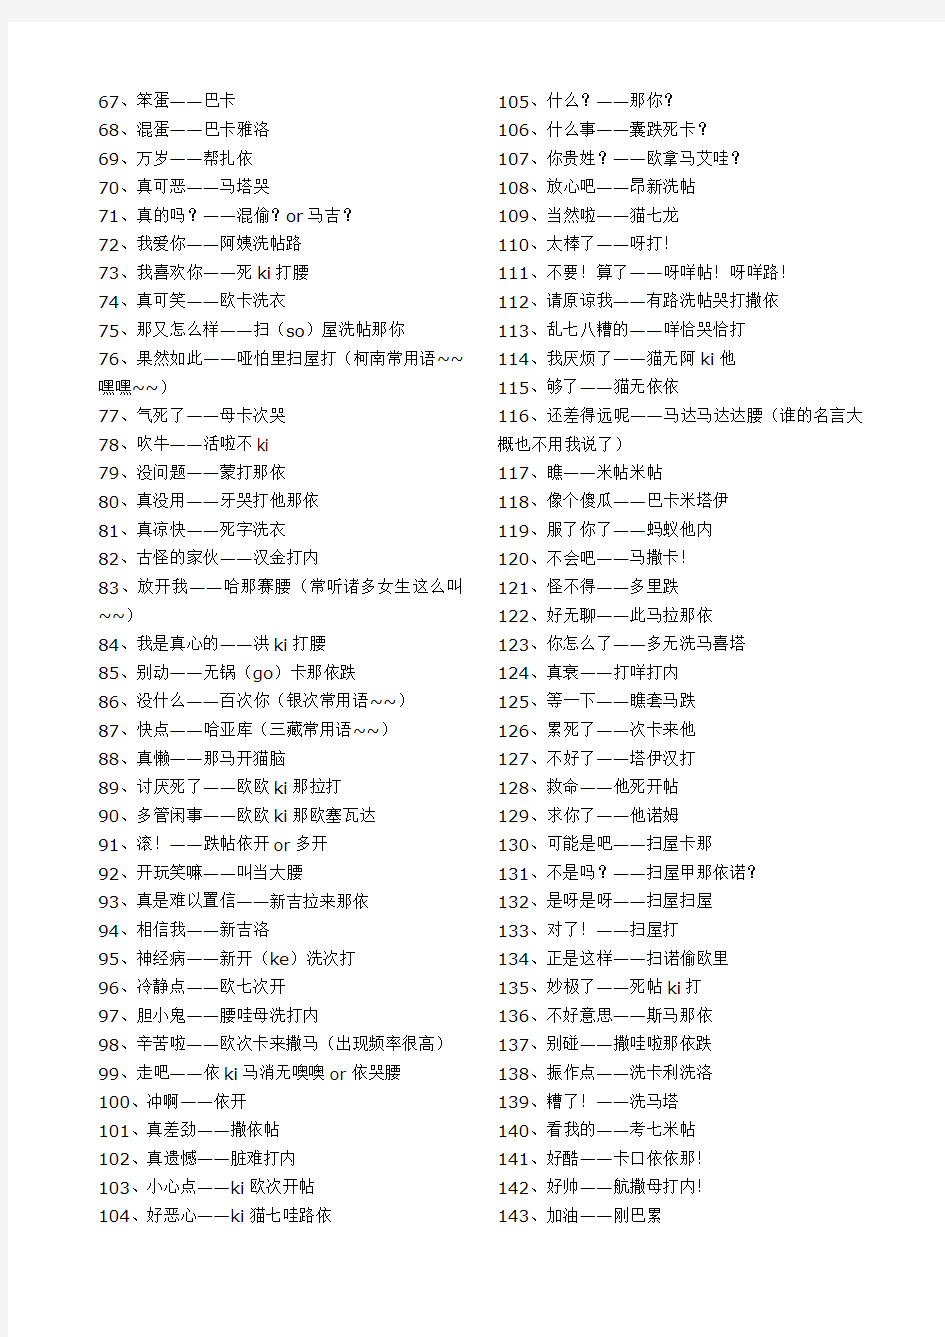 日语的日常用语(中文版)